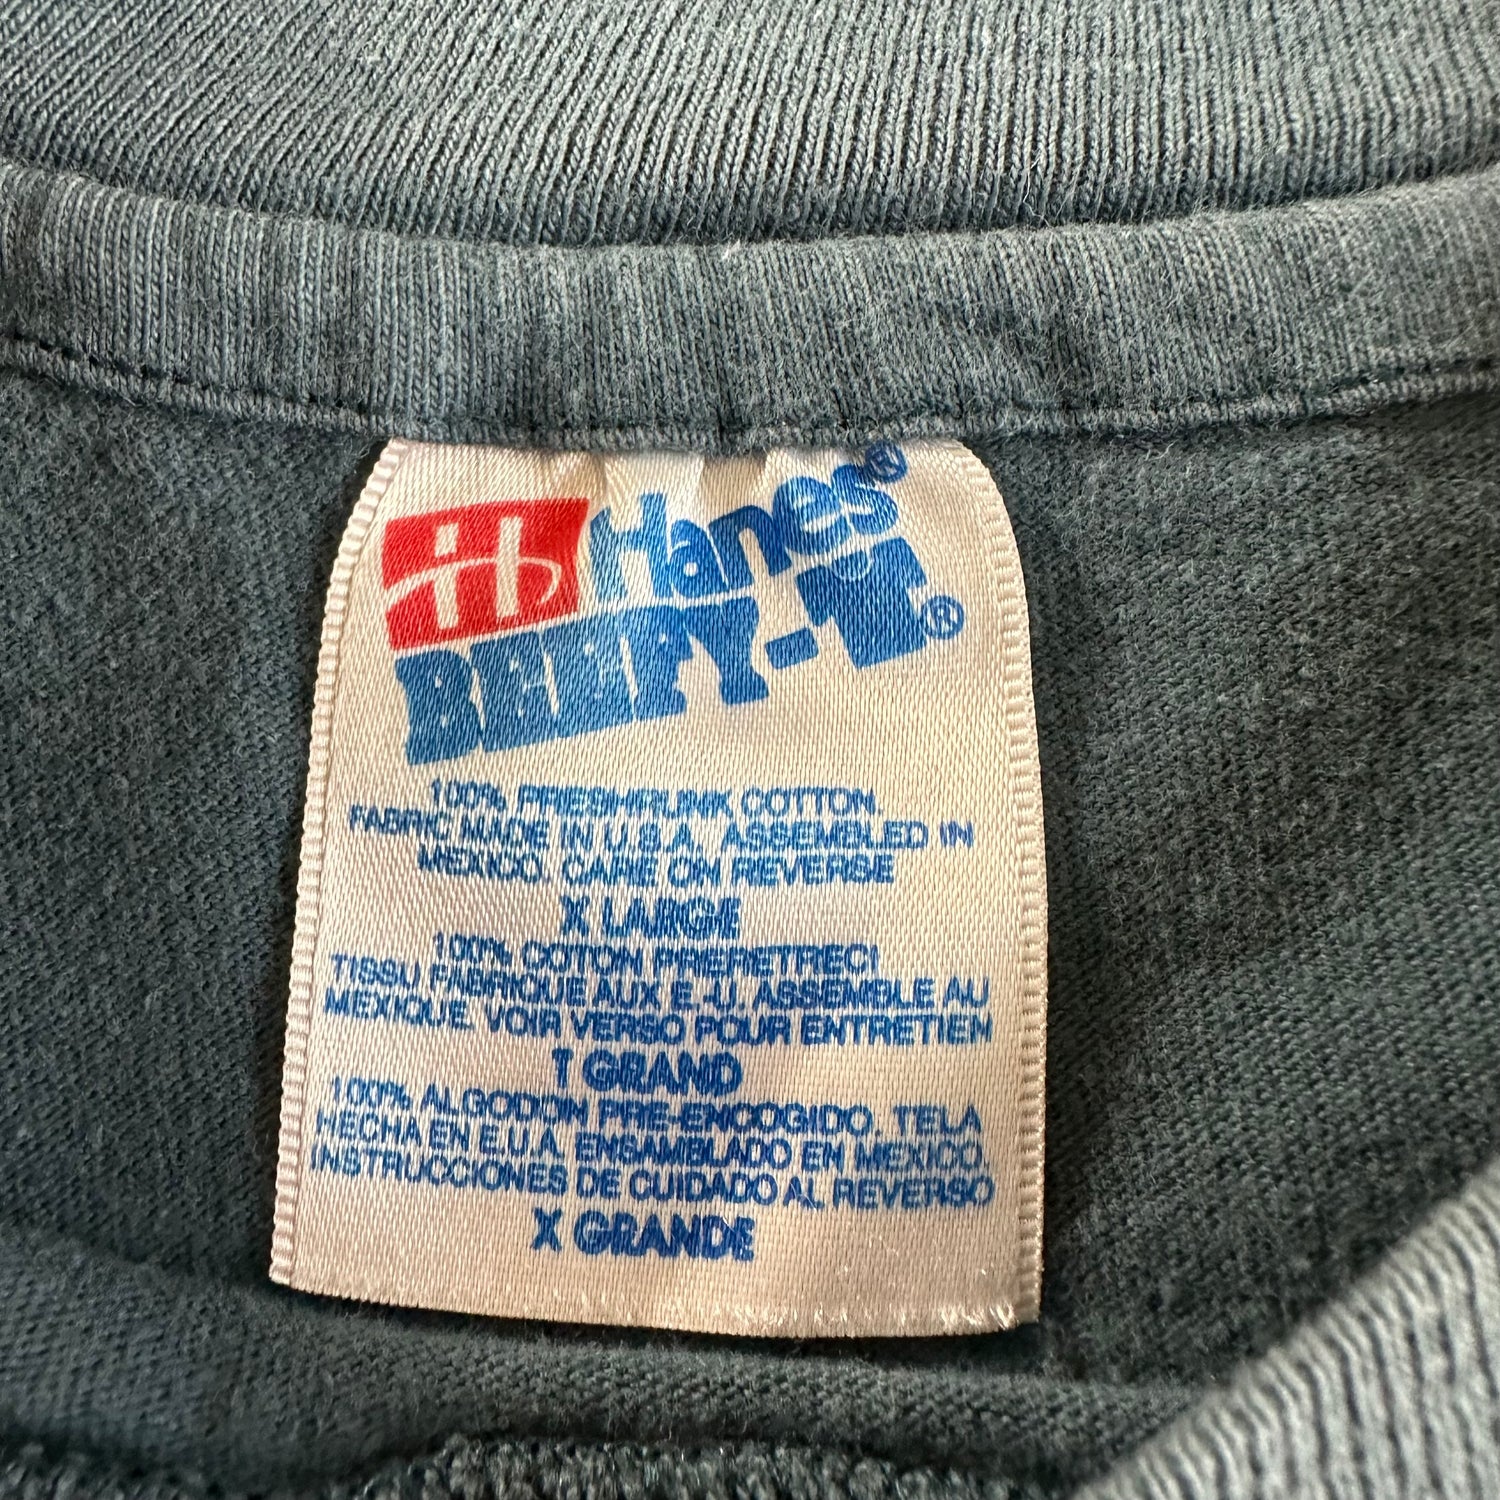 Vintage 1990s Ski T-shirt size XL